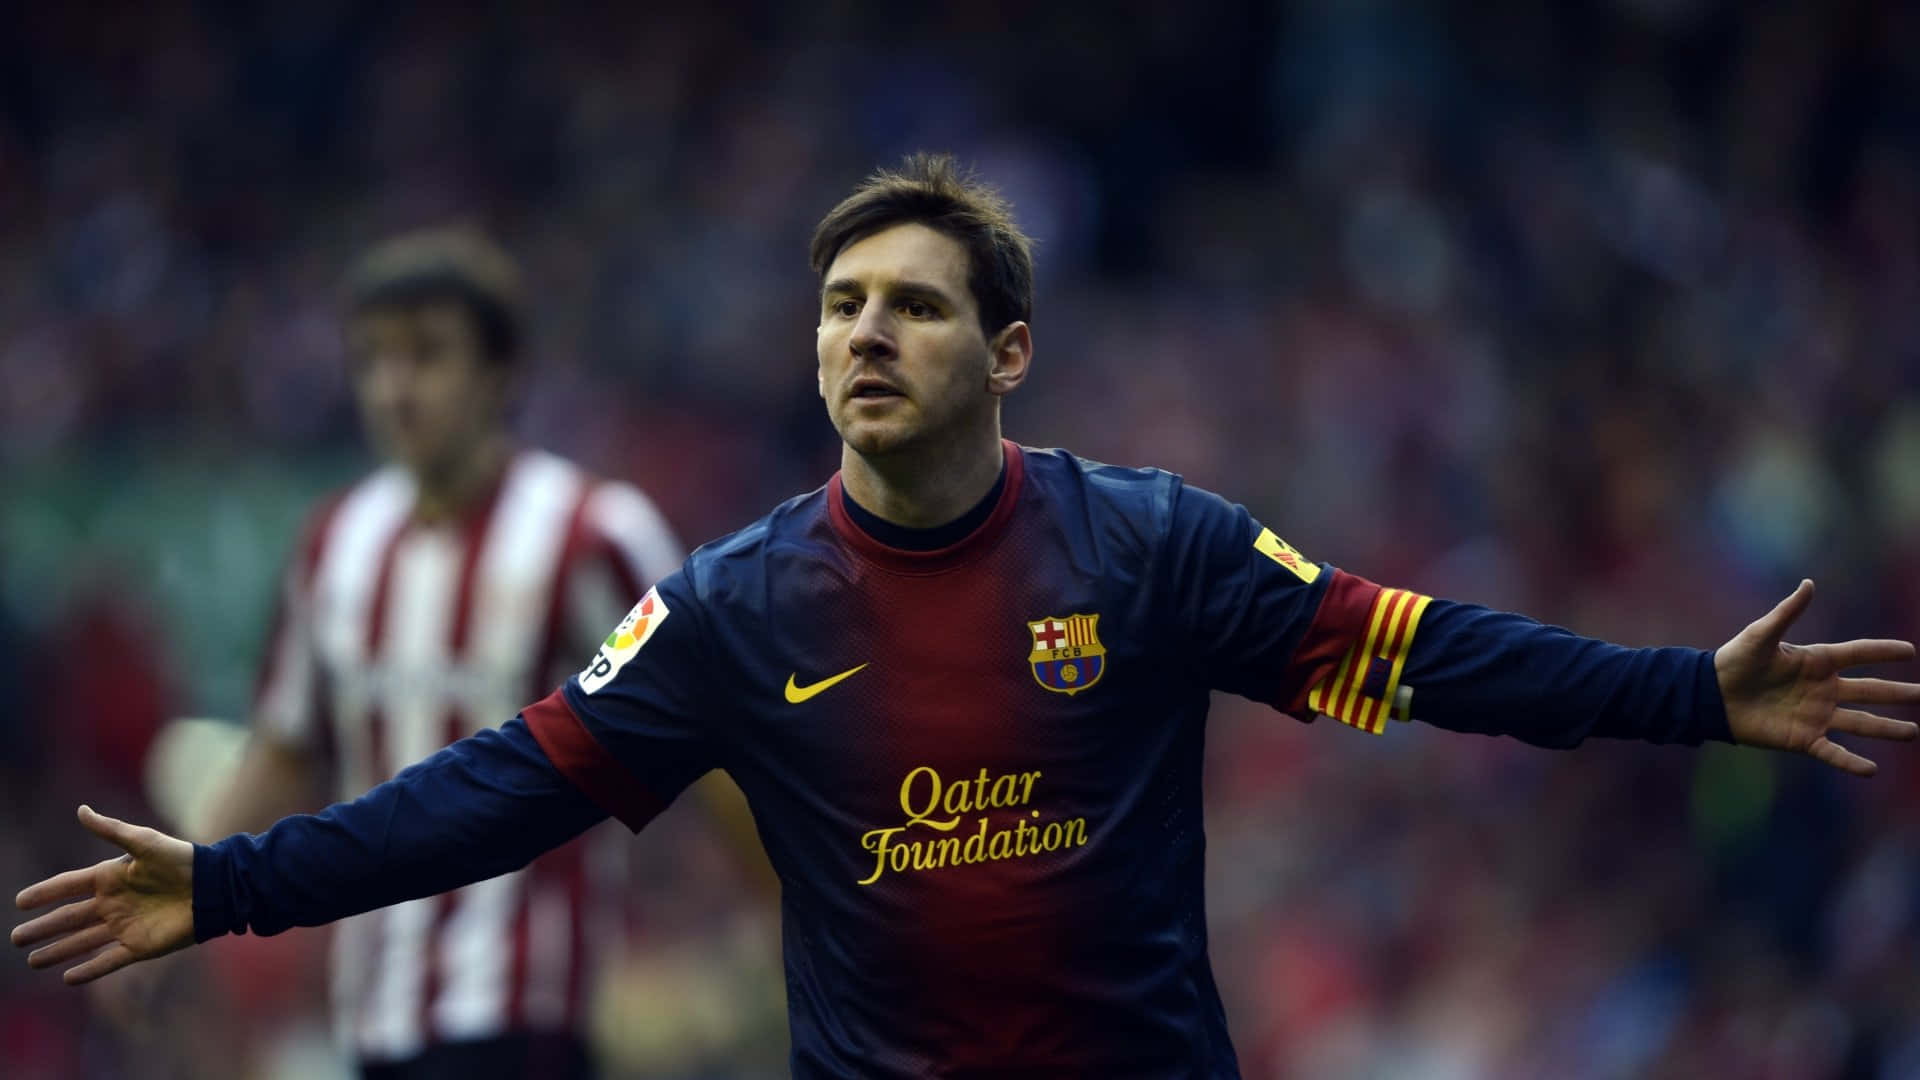 Lionel Messi - Soccer Legend Background